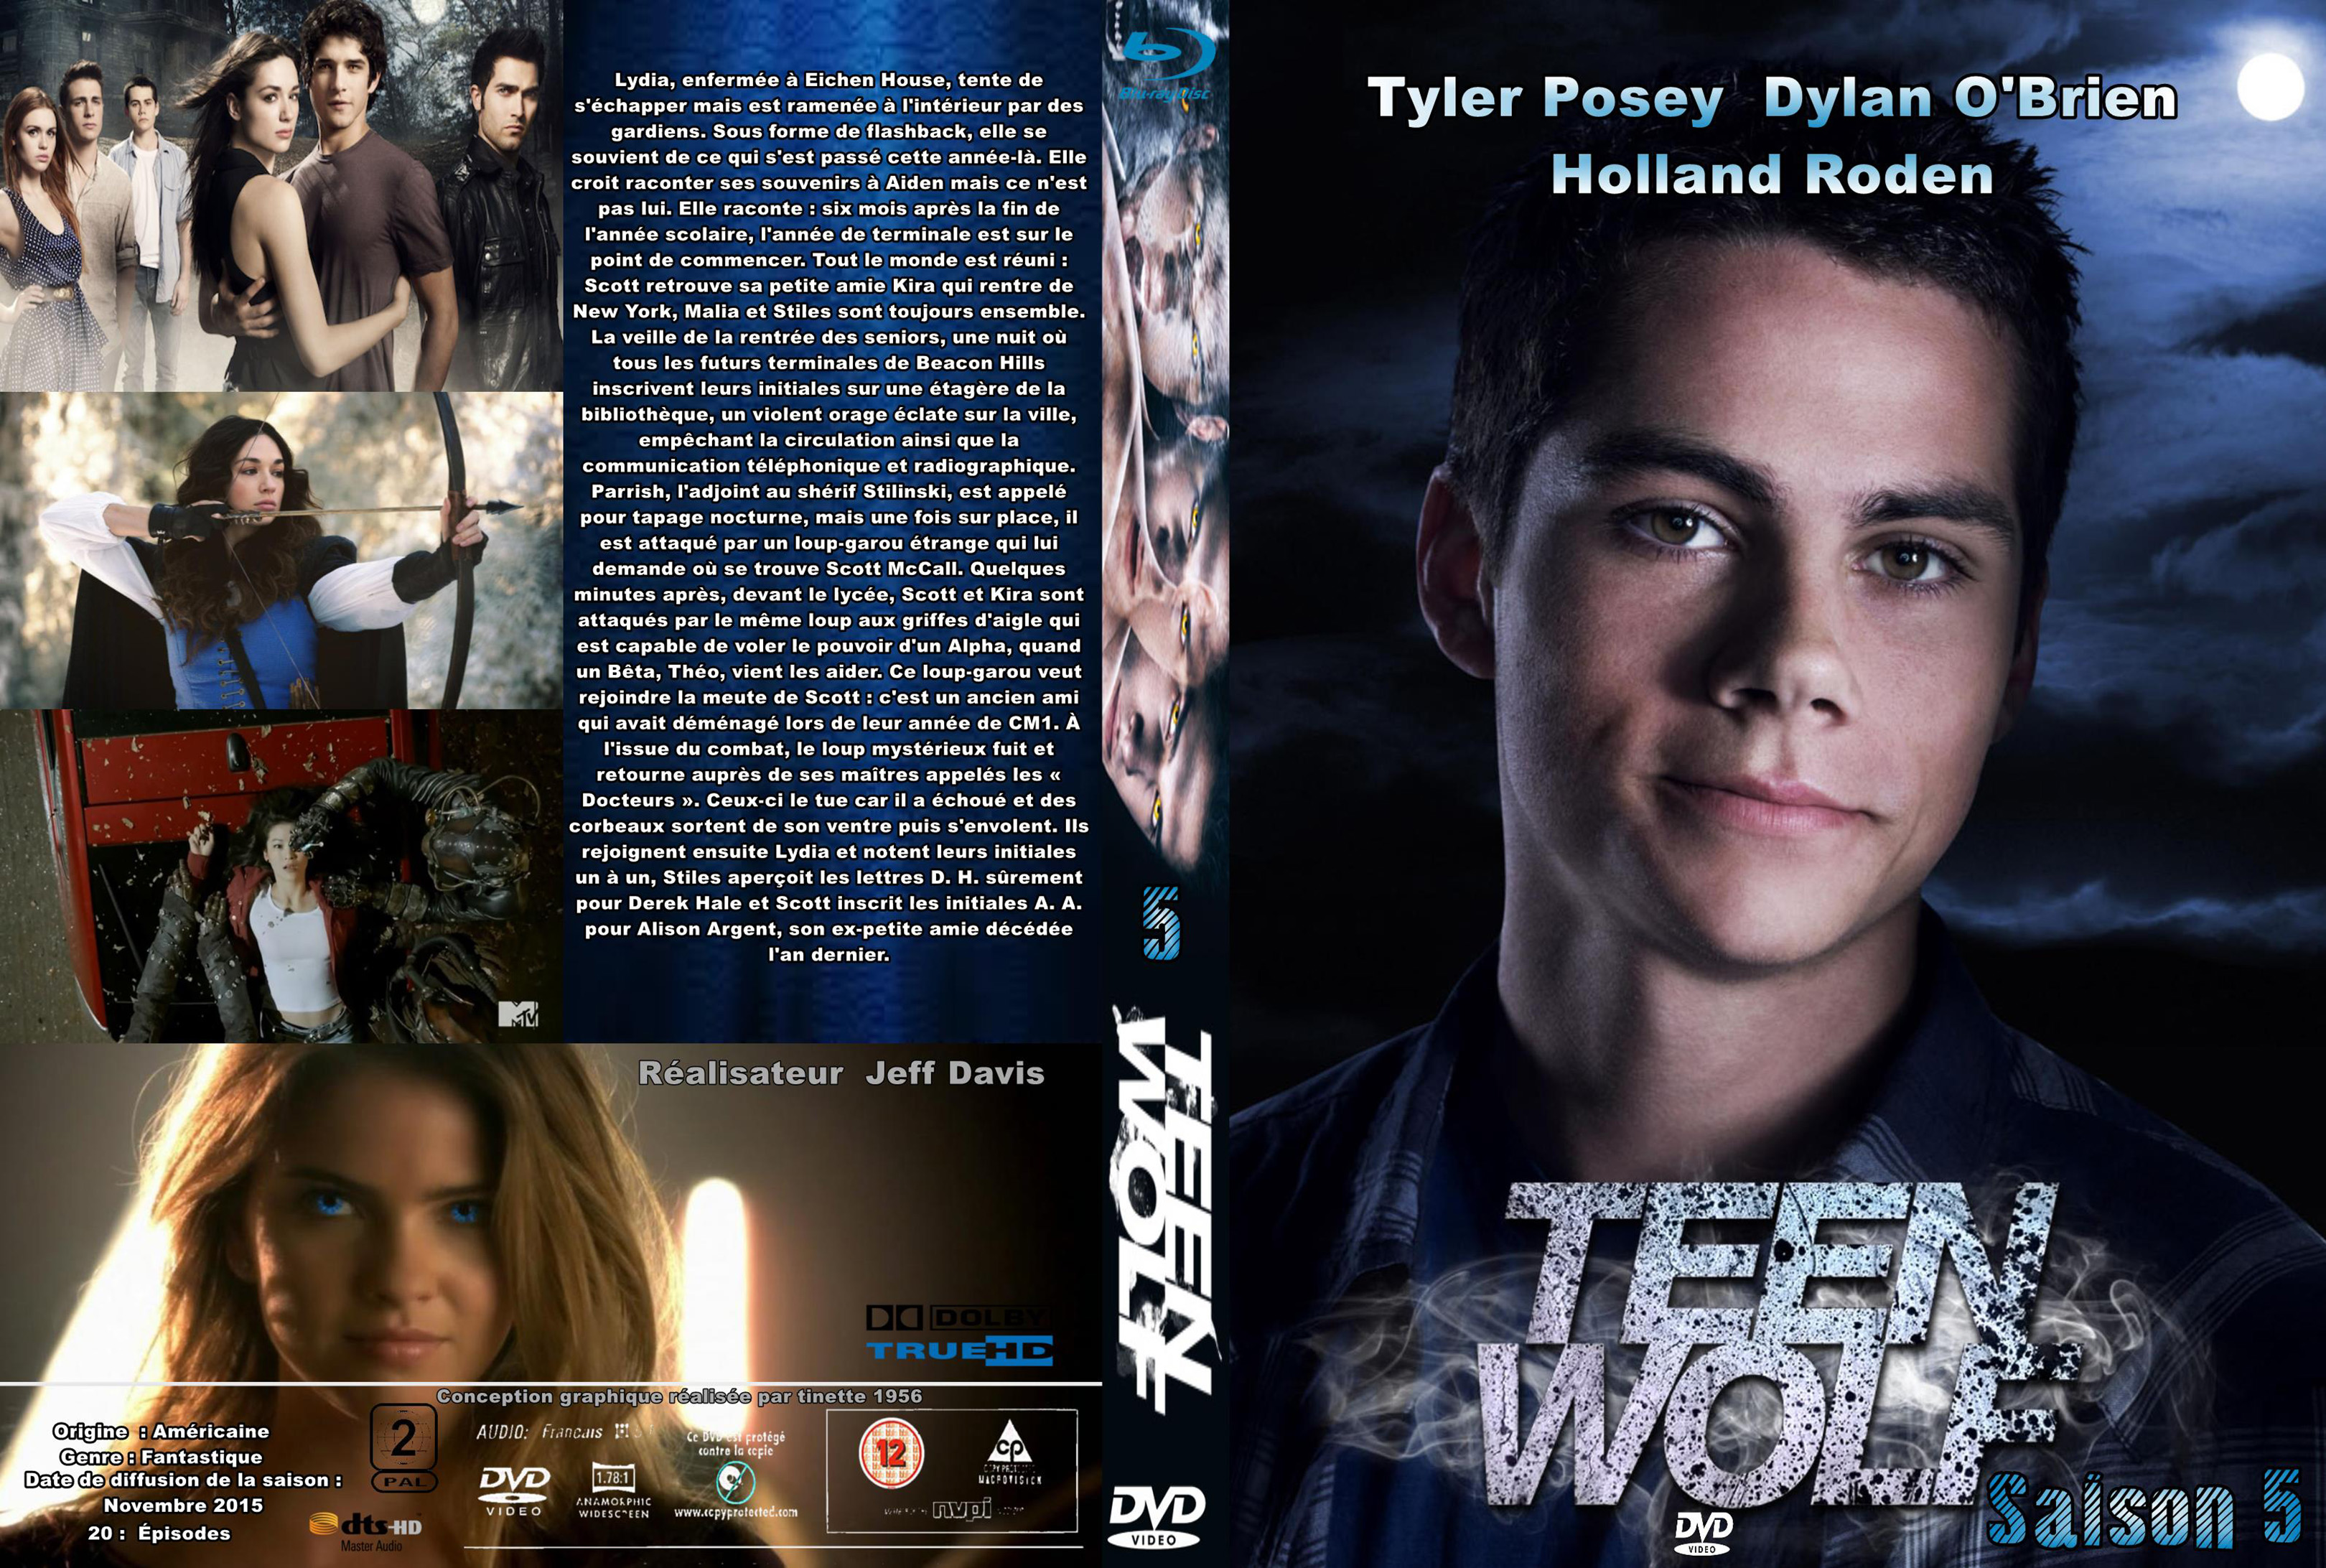 Jaquette DVD Teen wolf saison 5 custom